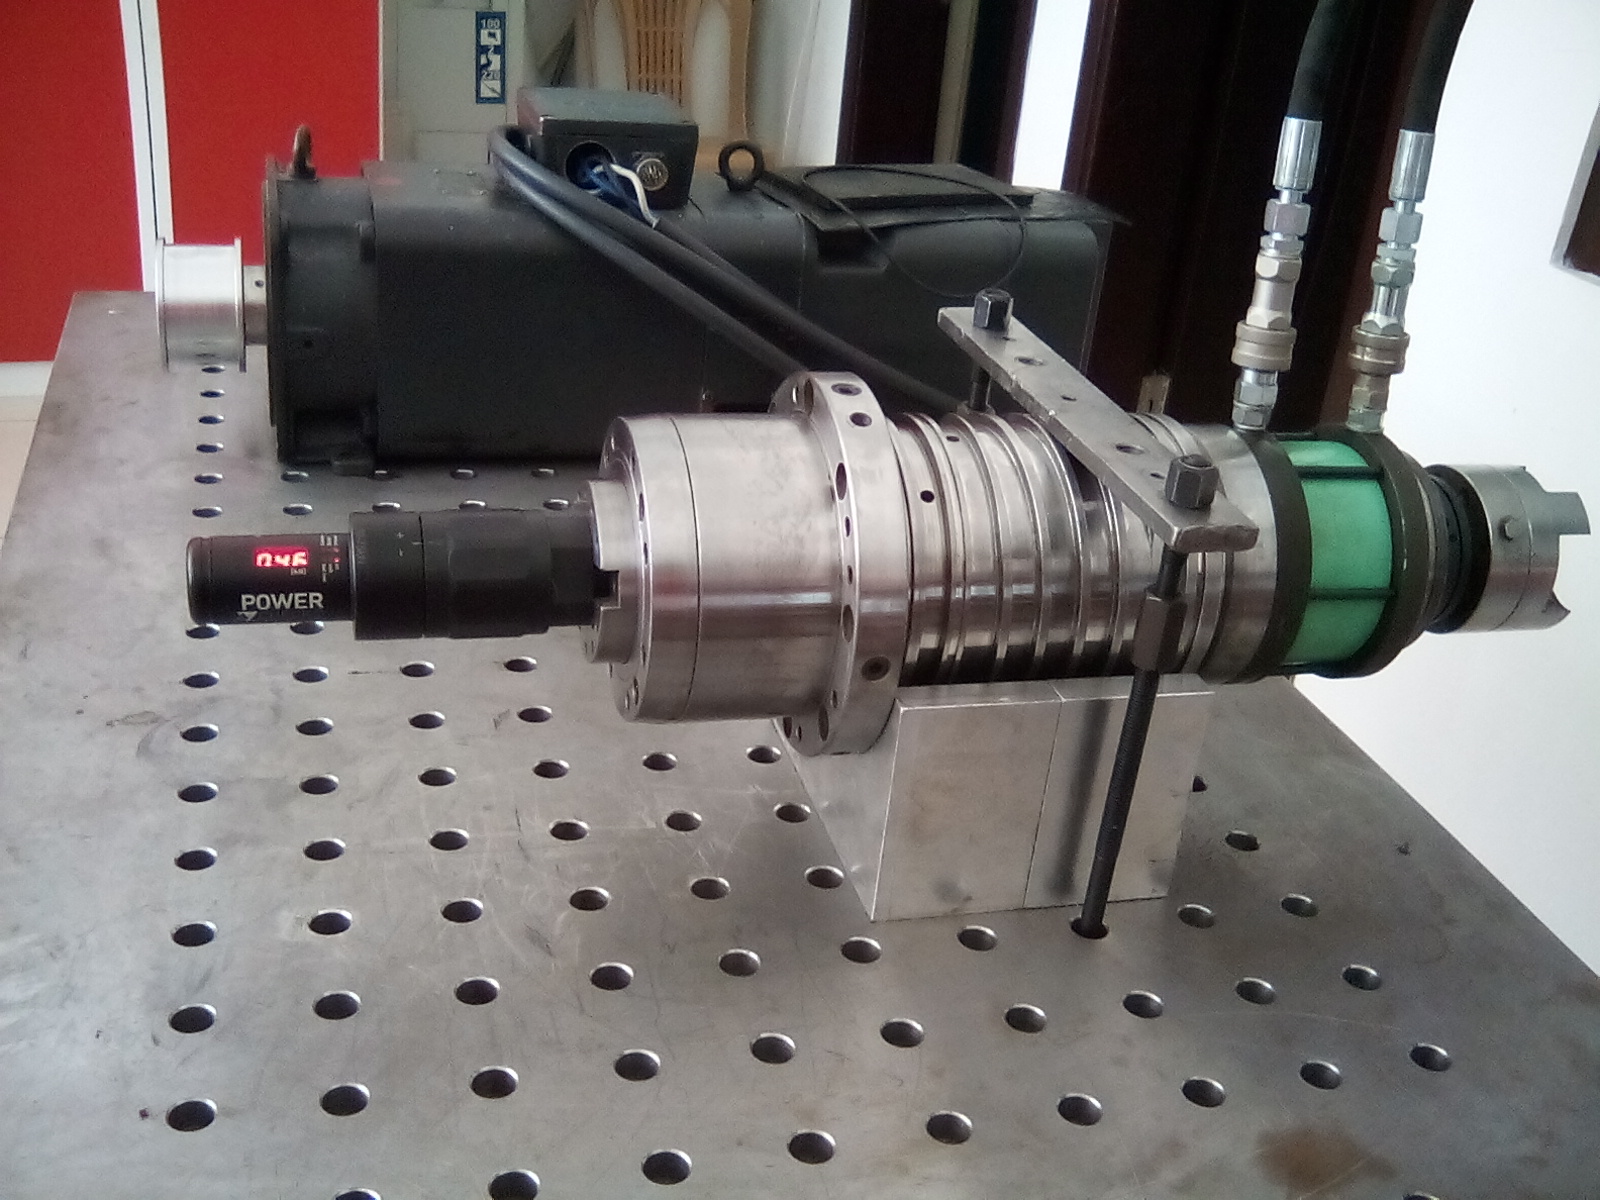 Onarım sonrası spindle motorların takım sıkma ölçümleri yapılarak toleranslar dahilinde olup olmadığı kontrol edilir.